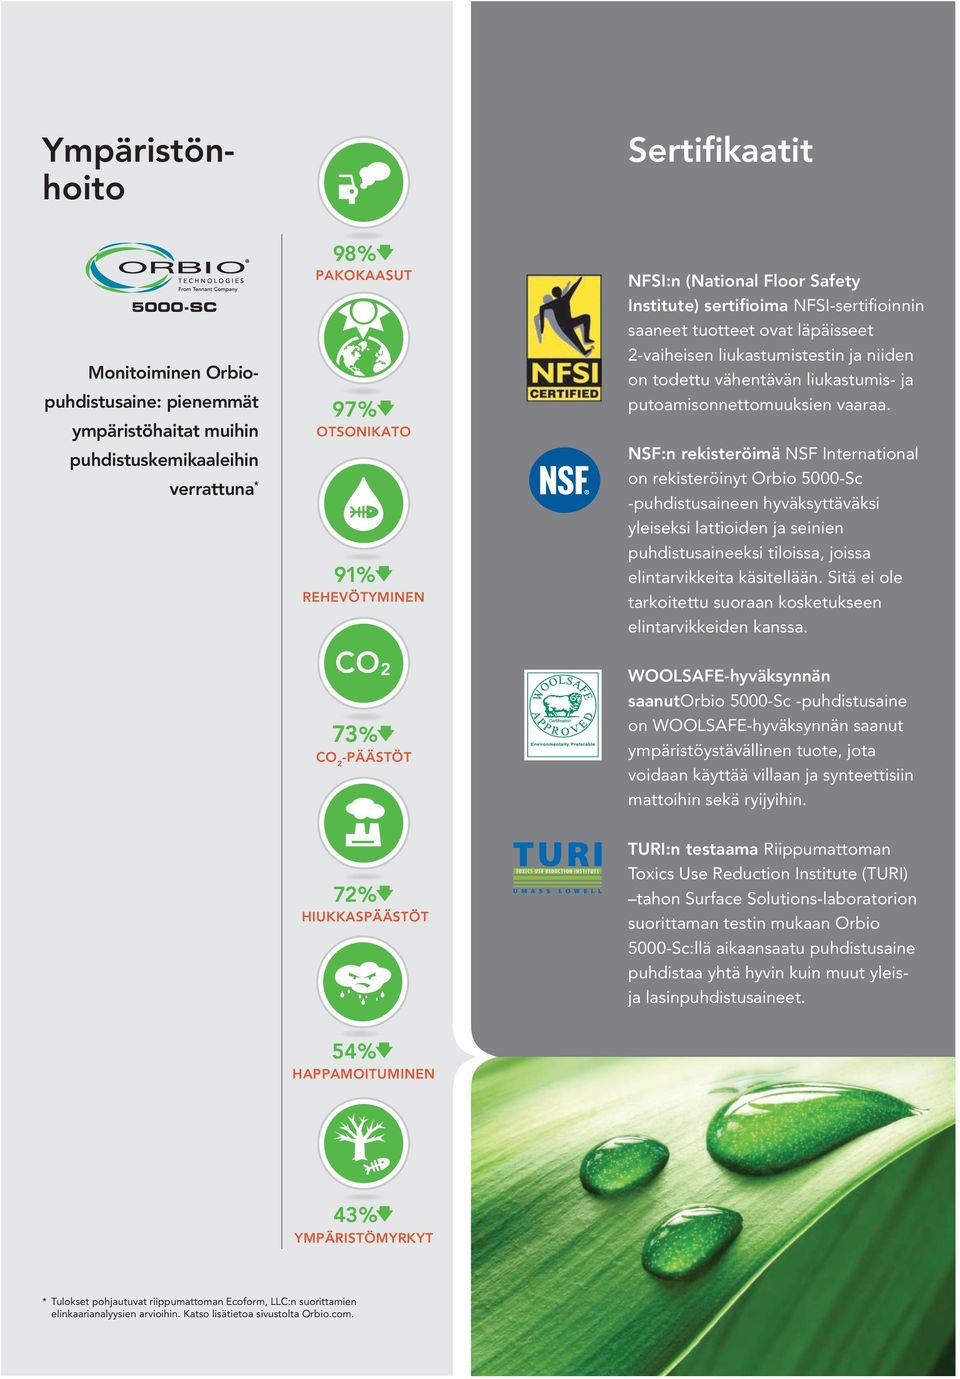 NSF:n rekisteröimä NSF International on rekisteröinyt Orbio 5000-Sc -puhdistusaineen hyväksyttäväksi yleiseksi lattioiden ja seinien puhdistusaineeksi tiloissa, joissa elintarvikkeita käsitellään.